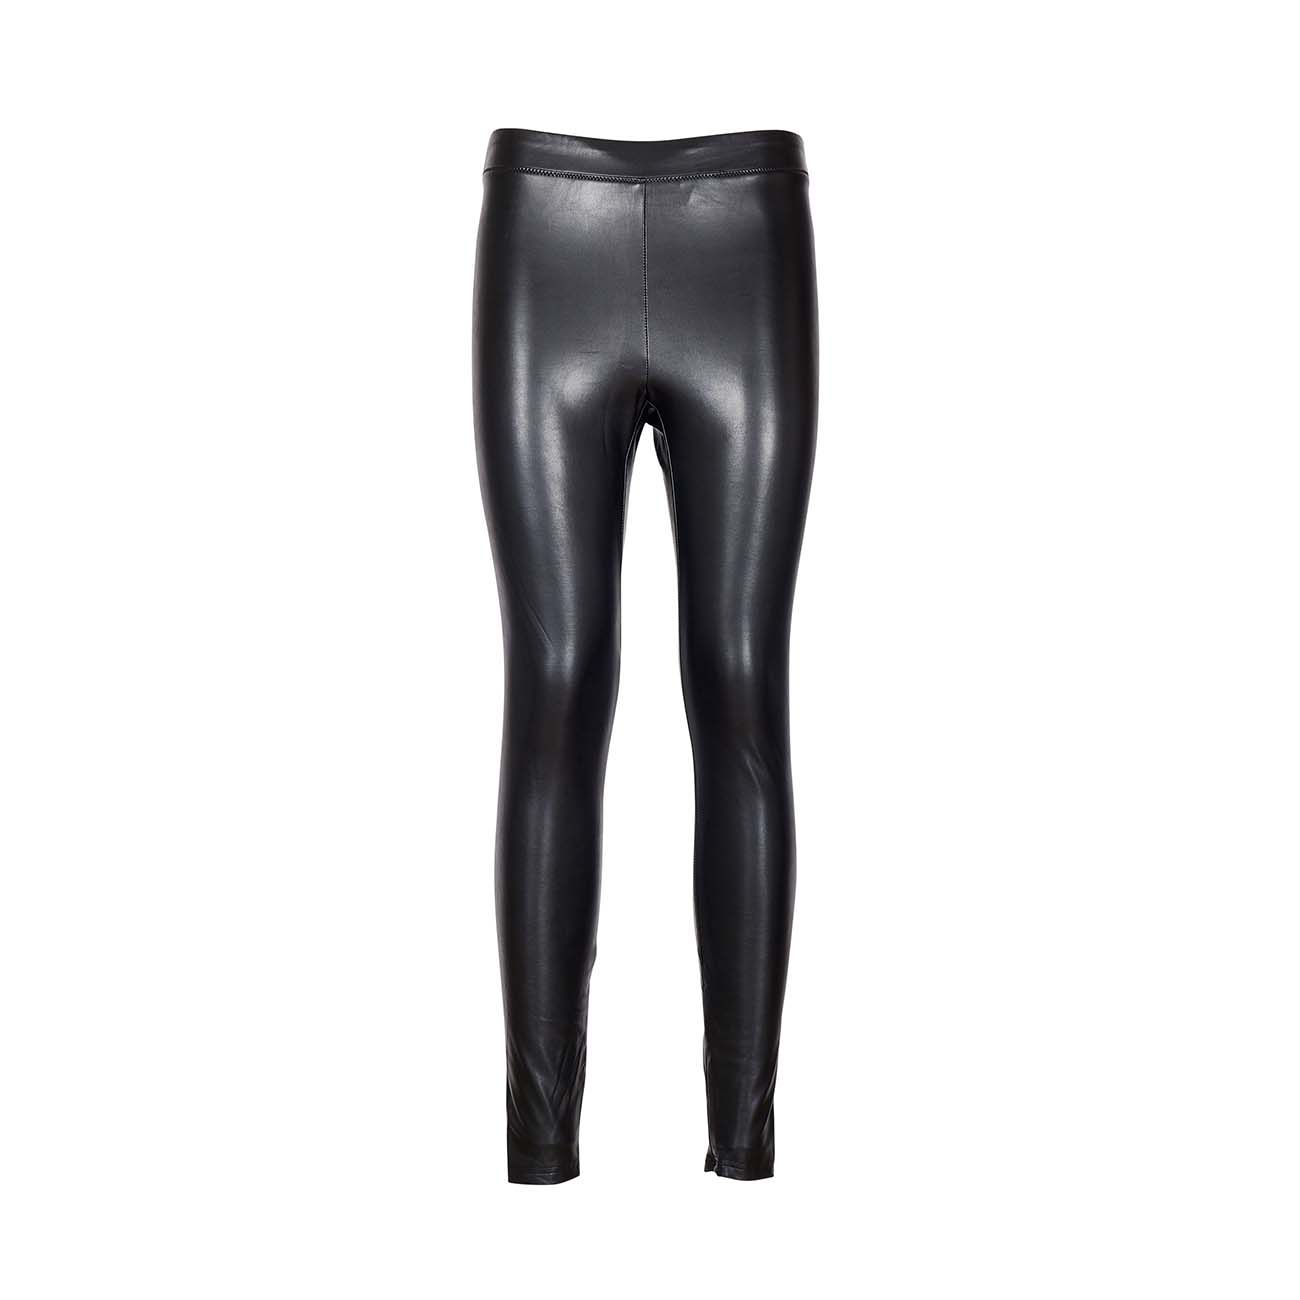 🖤 Guess Women's Size Large Faux-Leather Leggings Black Zipper-Back  Versatile